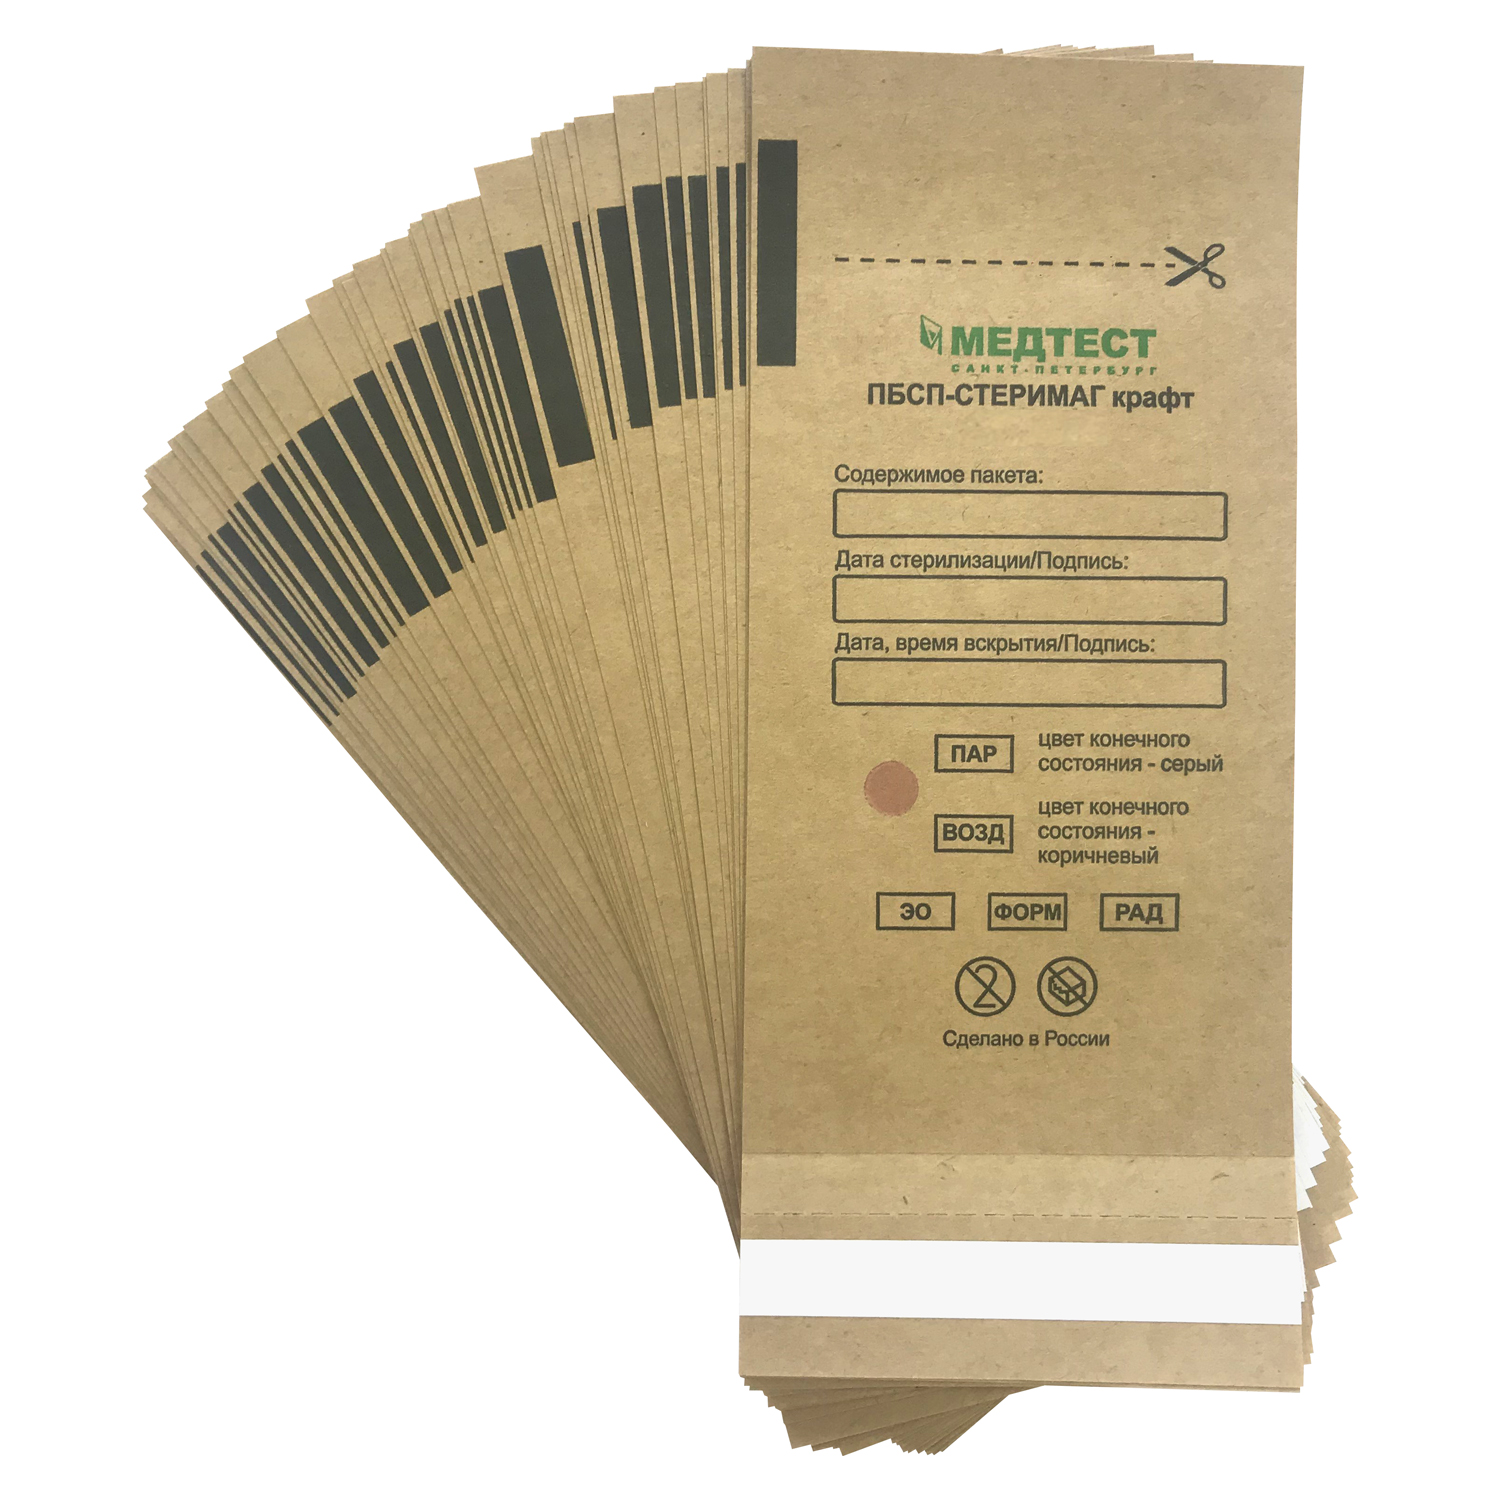 Пакет крафт "МЕДТЕСТ" 75х150 мм бумажный самоклеящийся плоский 100 шт (ПБСП-СТЕРИМАГ)